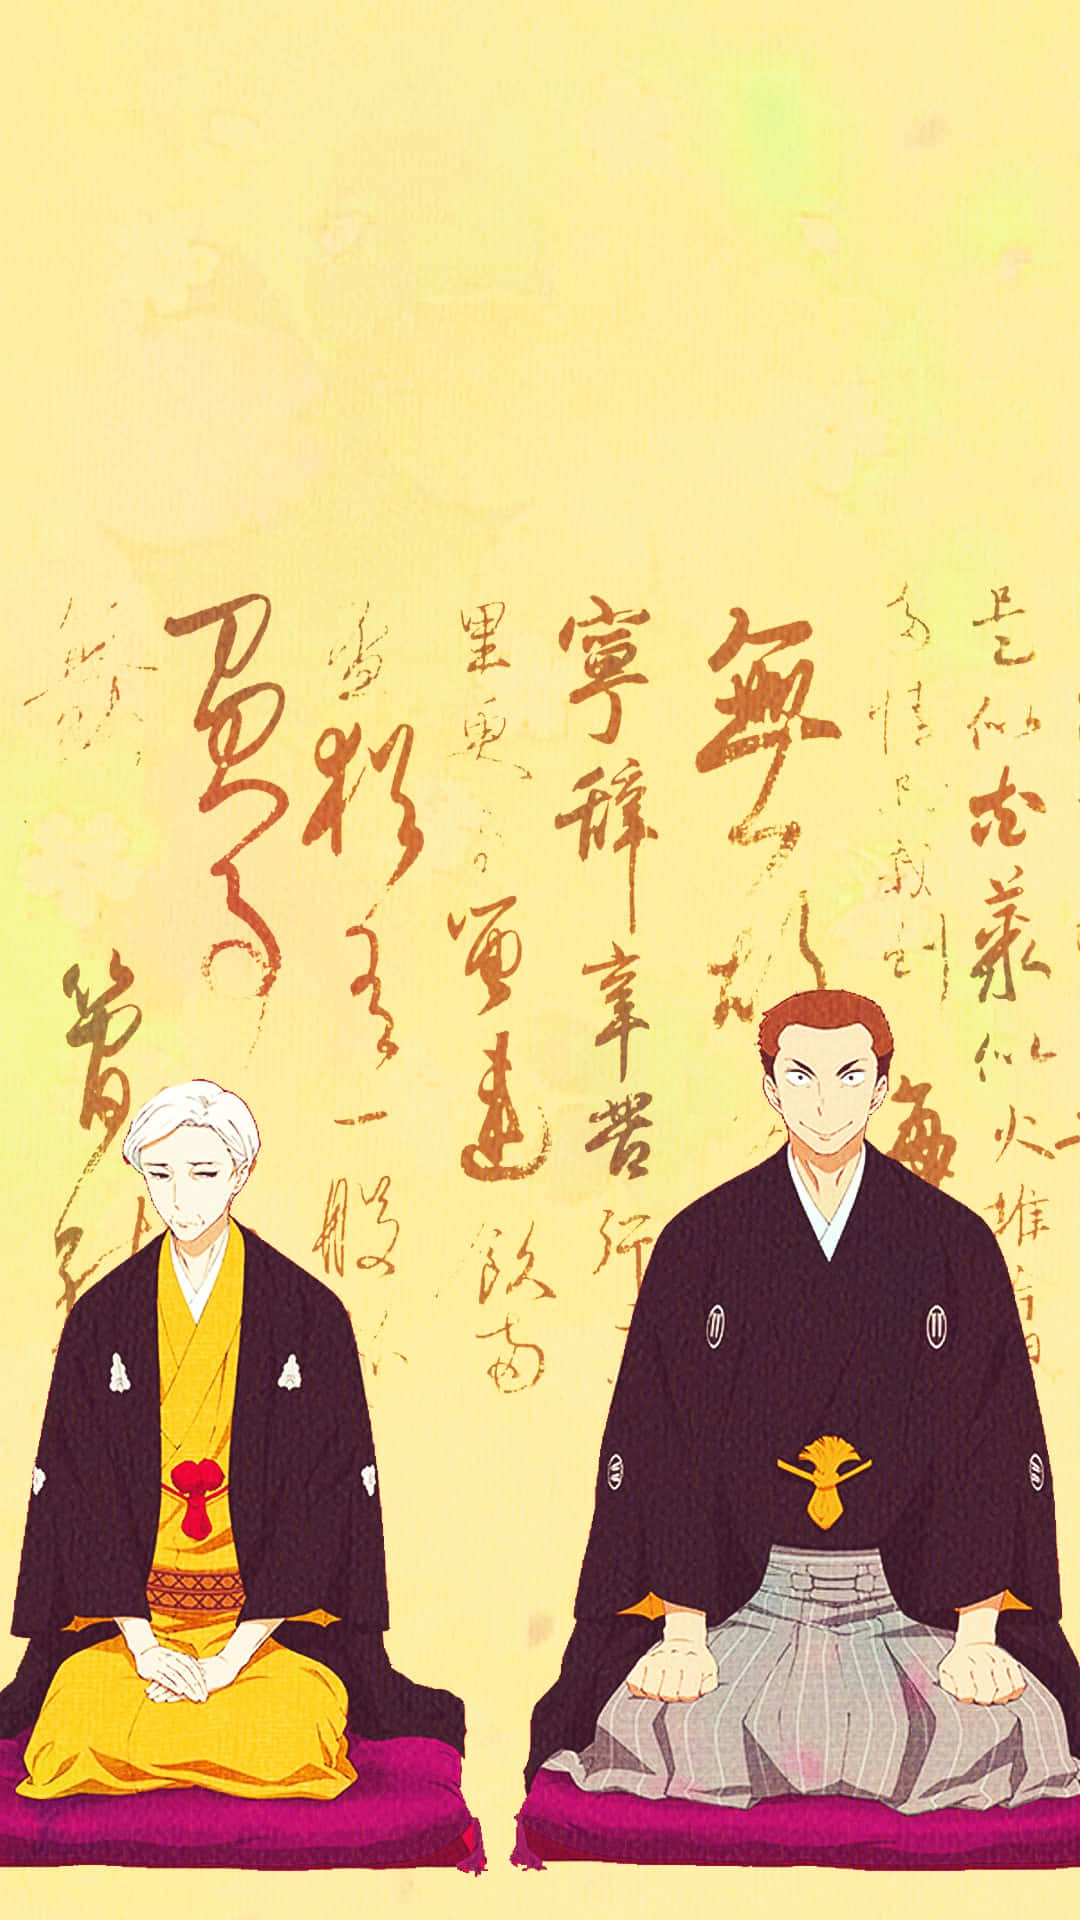 Shouwa Genroku Rakugo Shinjuu Anime Characters Wallpaper